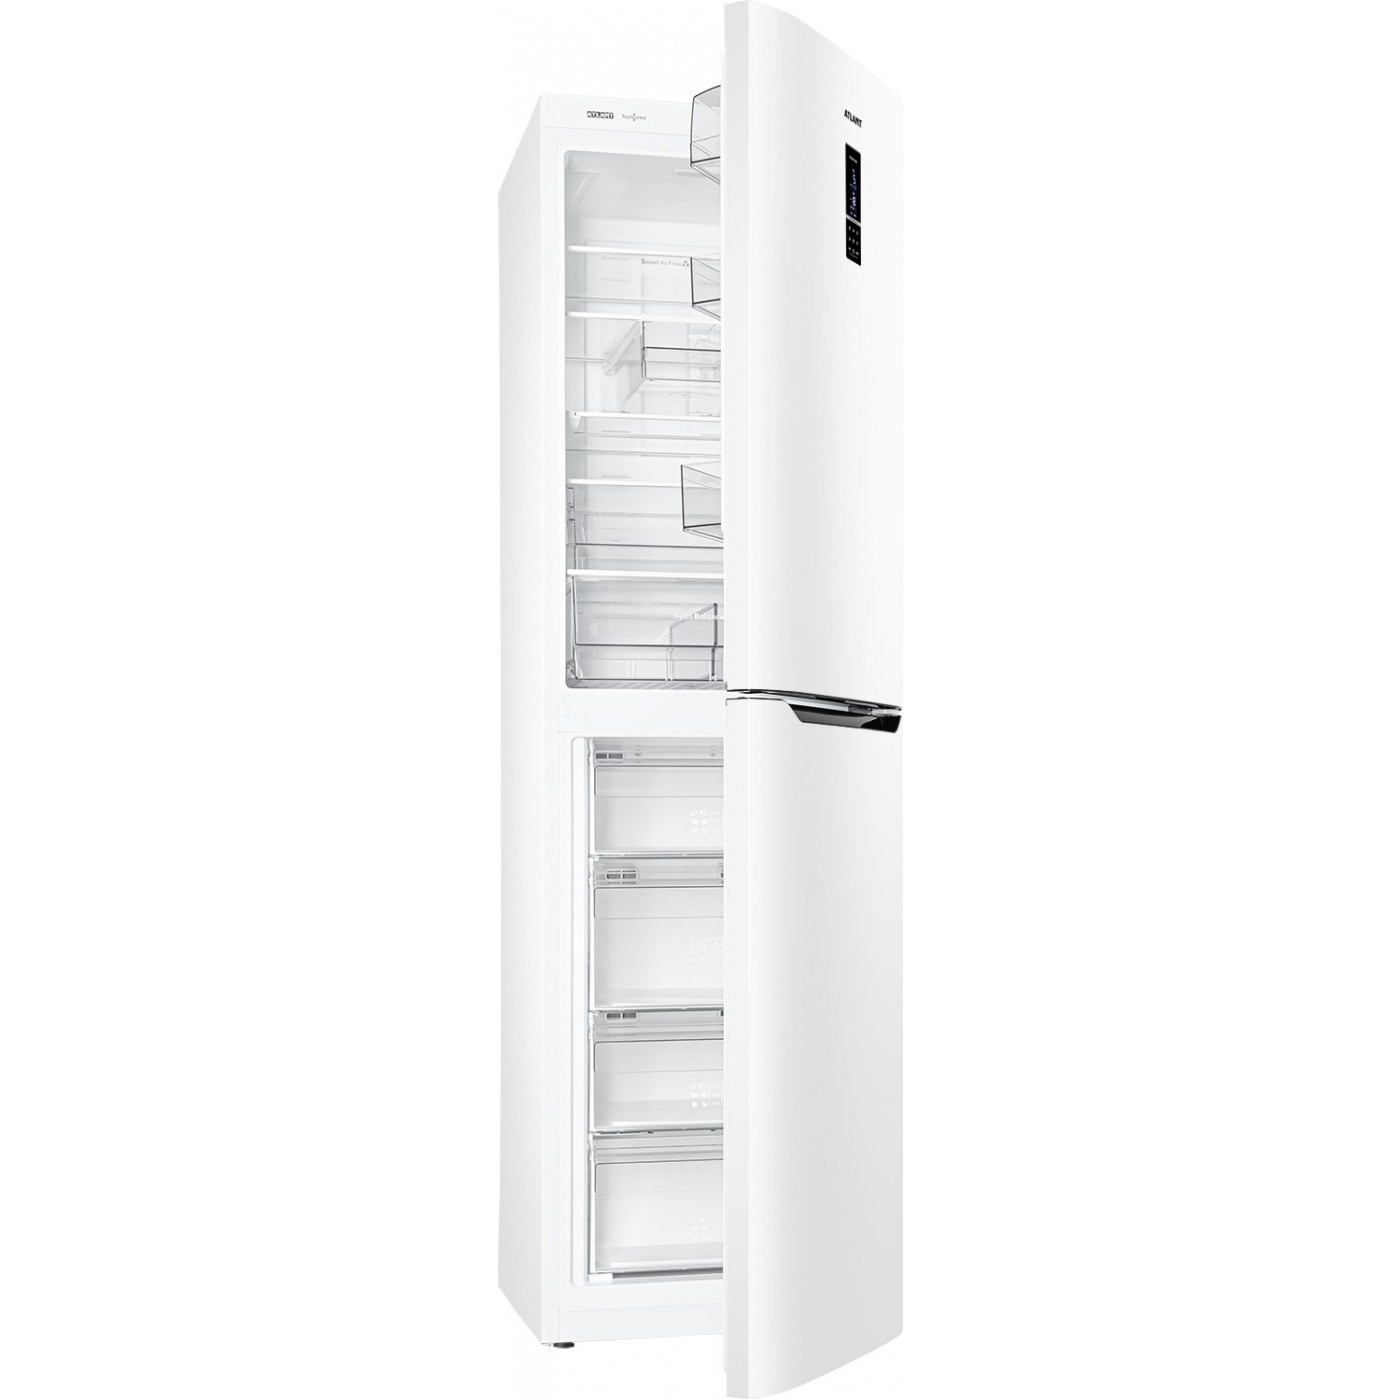 Холодильник Atlant XM-4625-549-ND